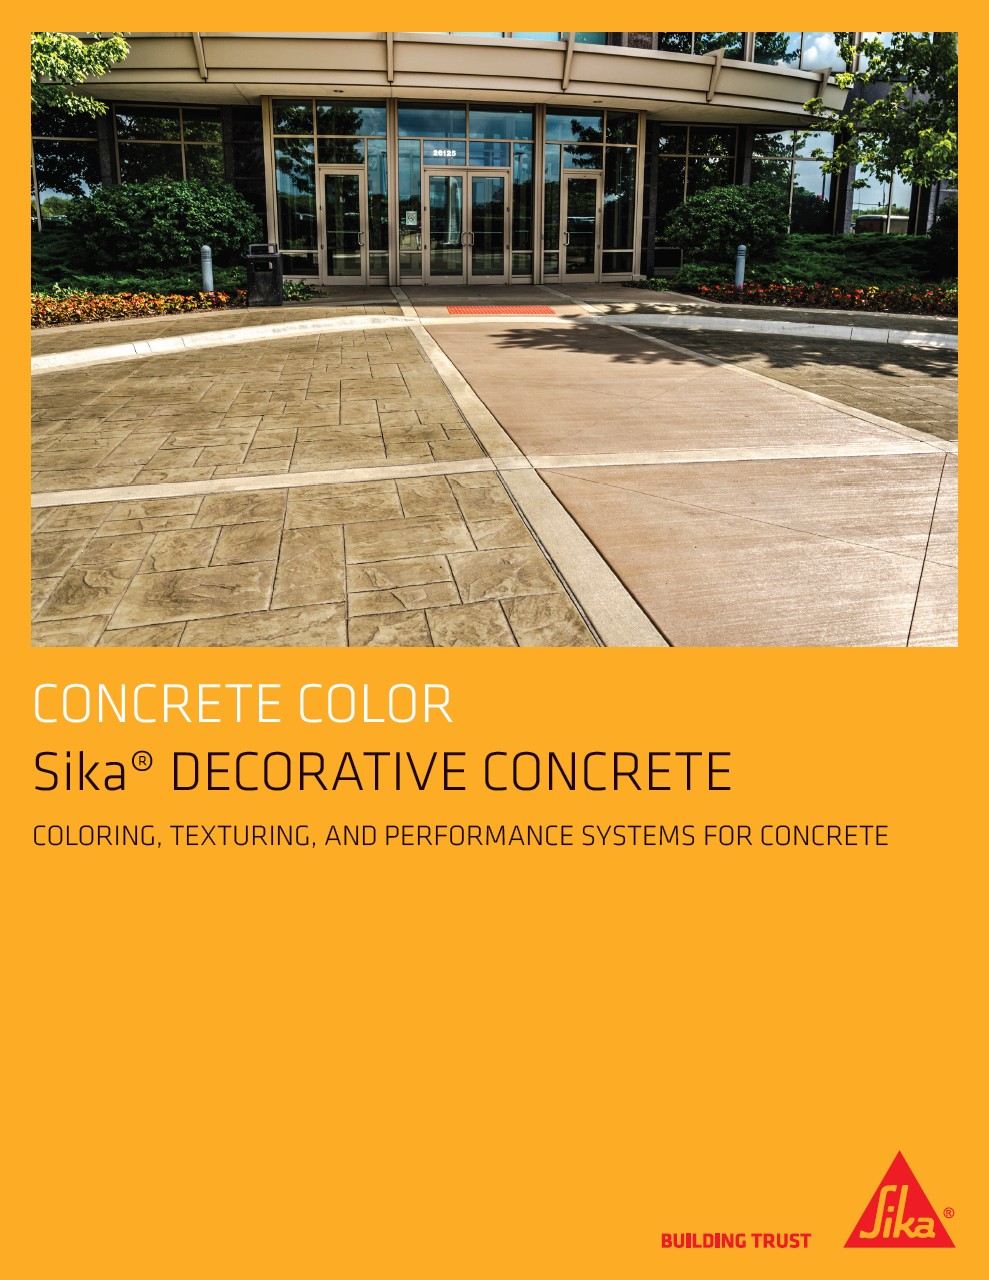 Sika Decorative Concrete